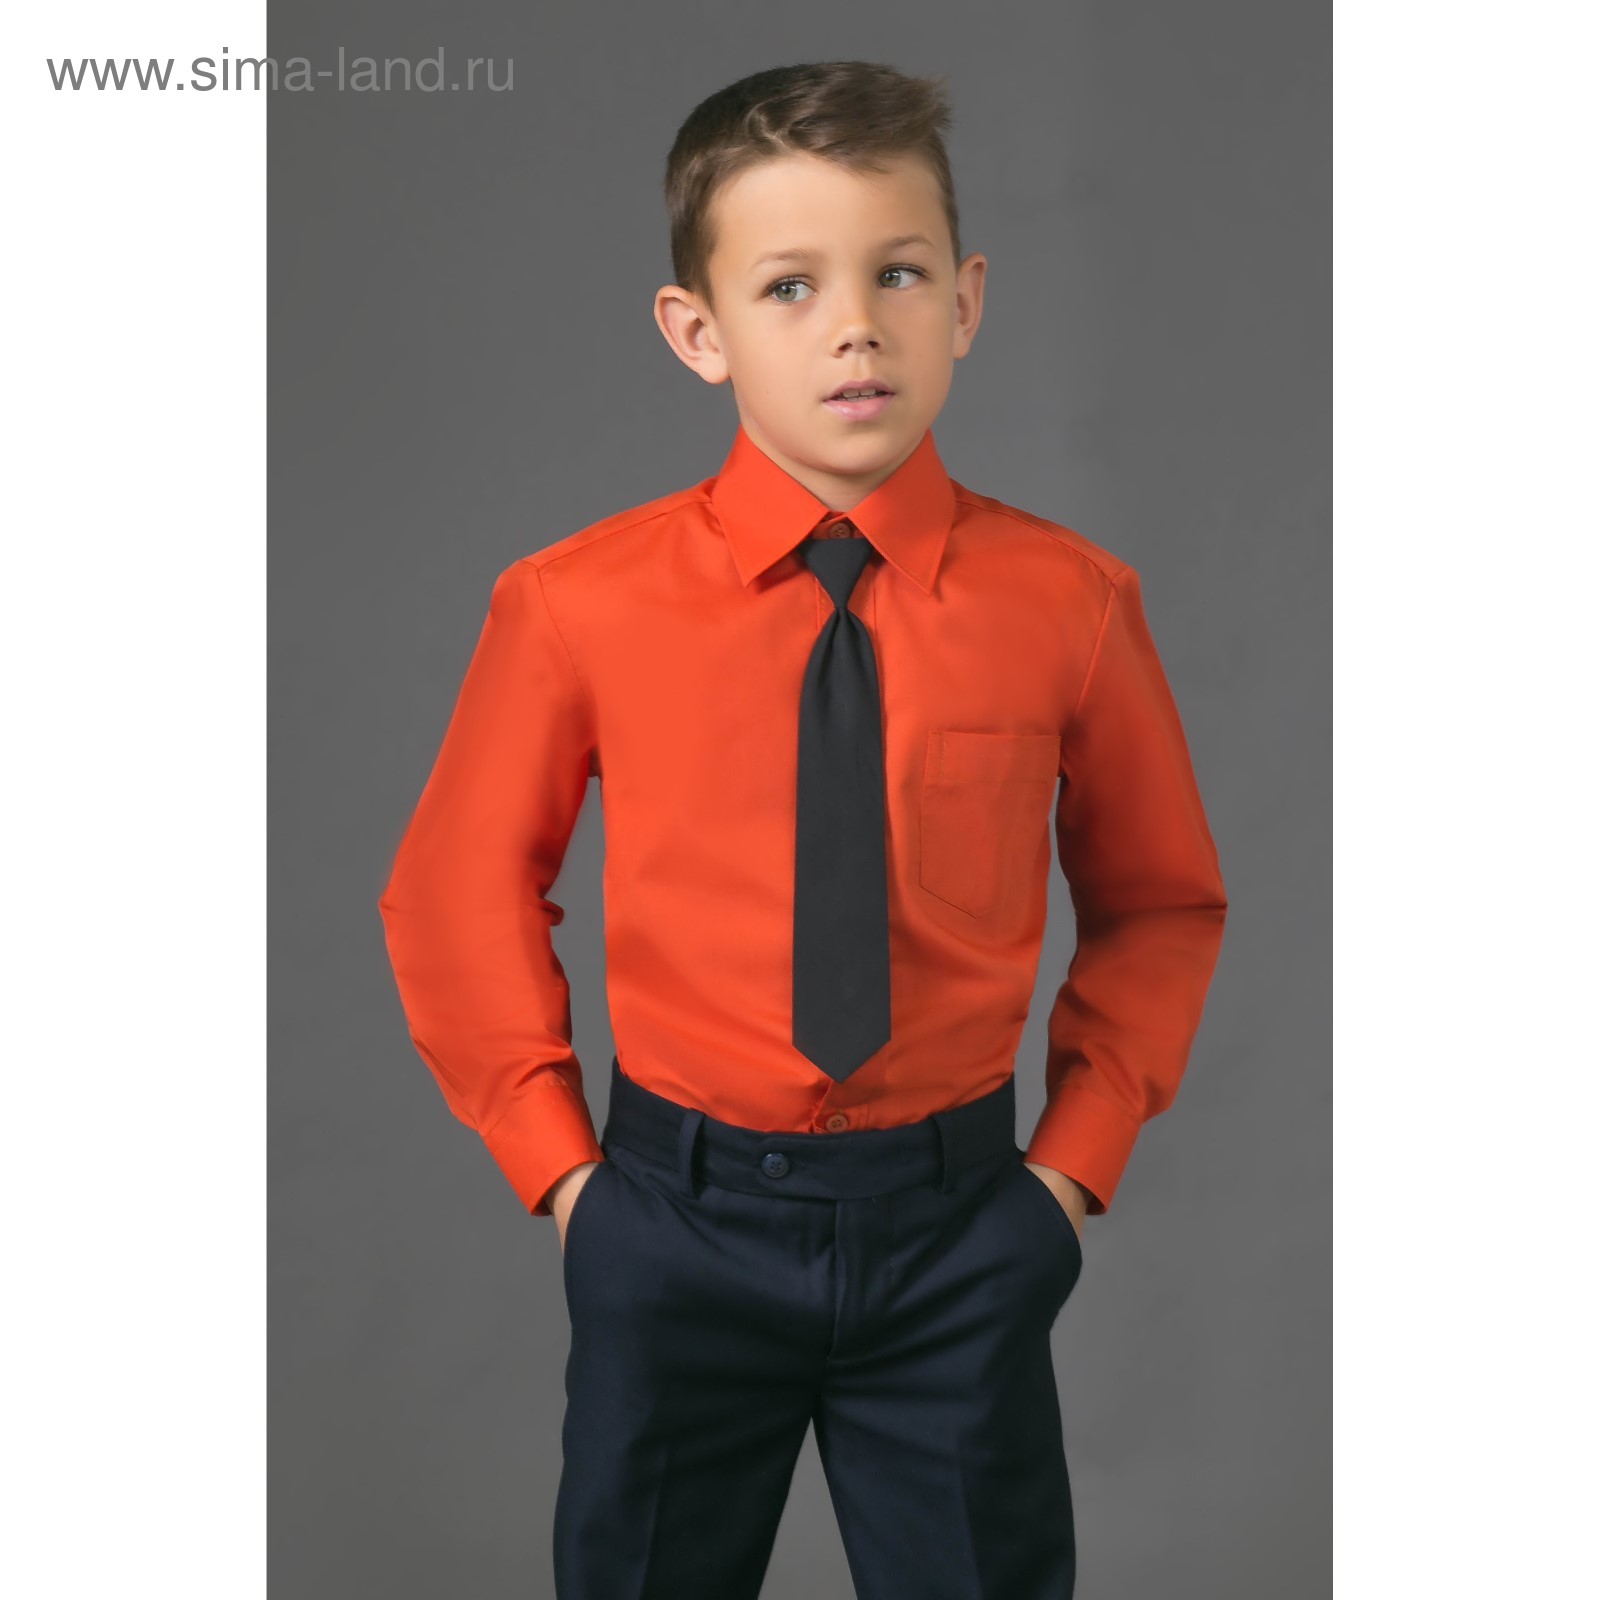 Оранжевая рубашка для мальчика